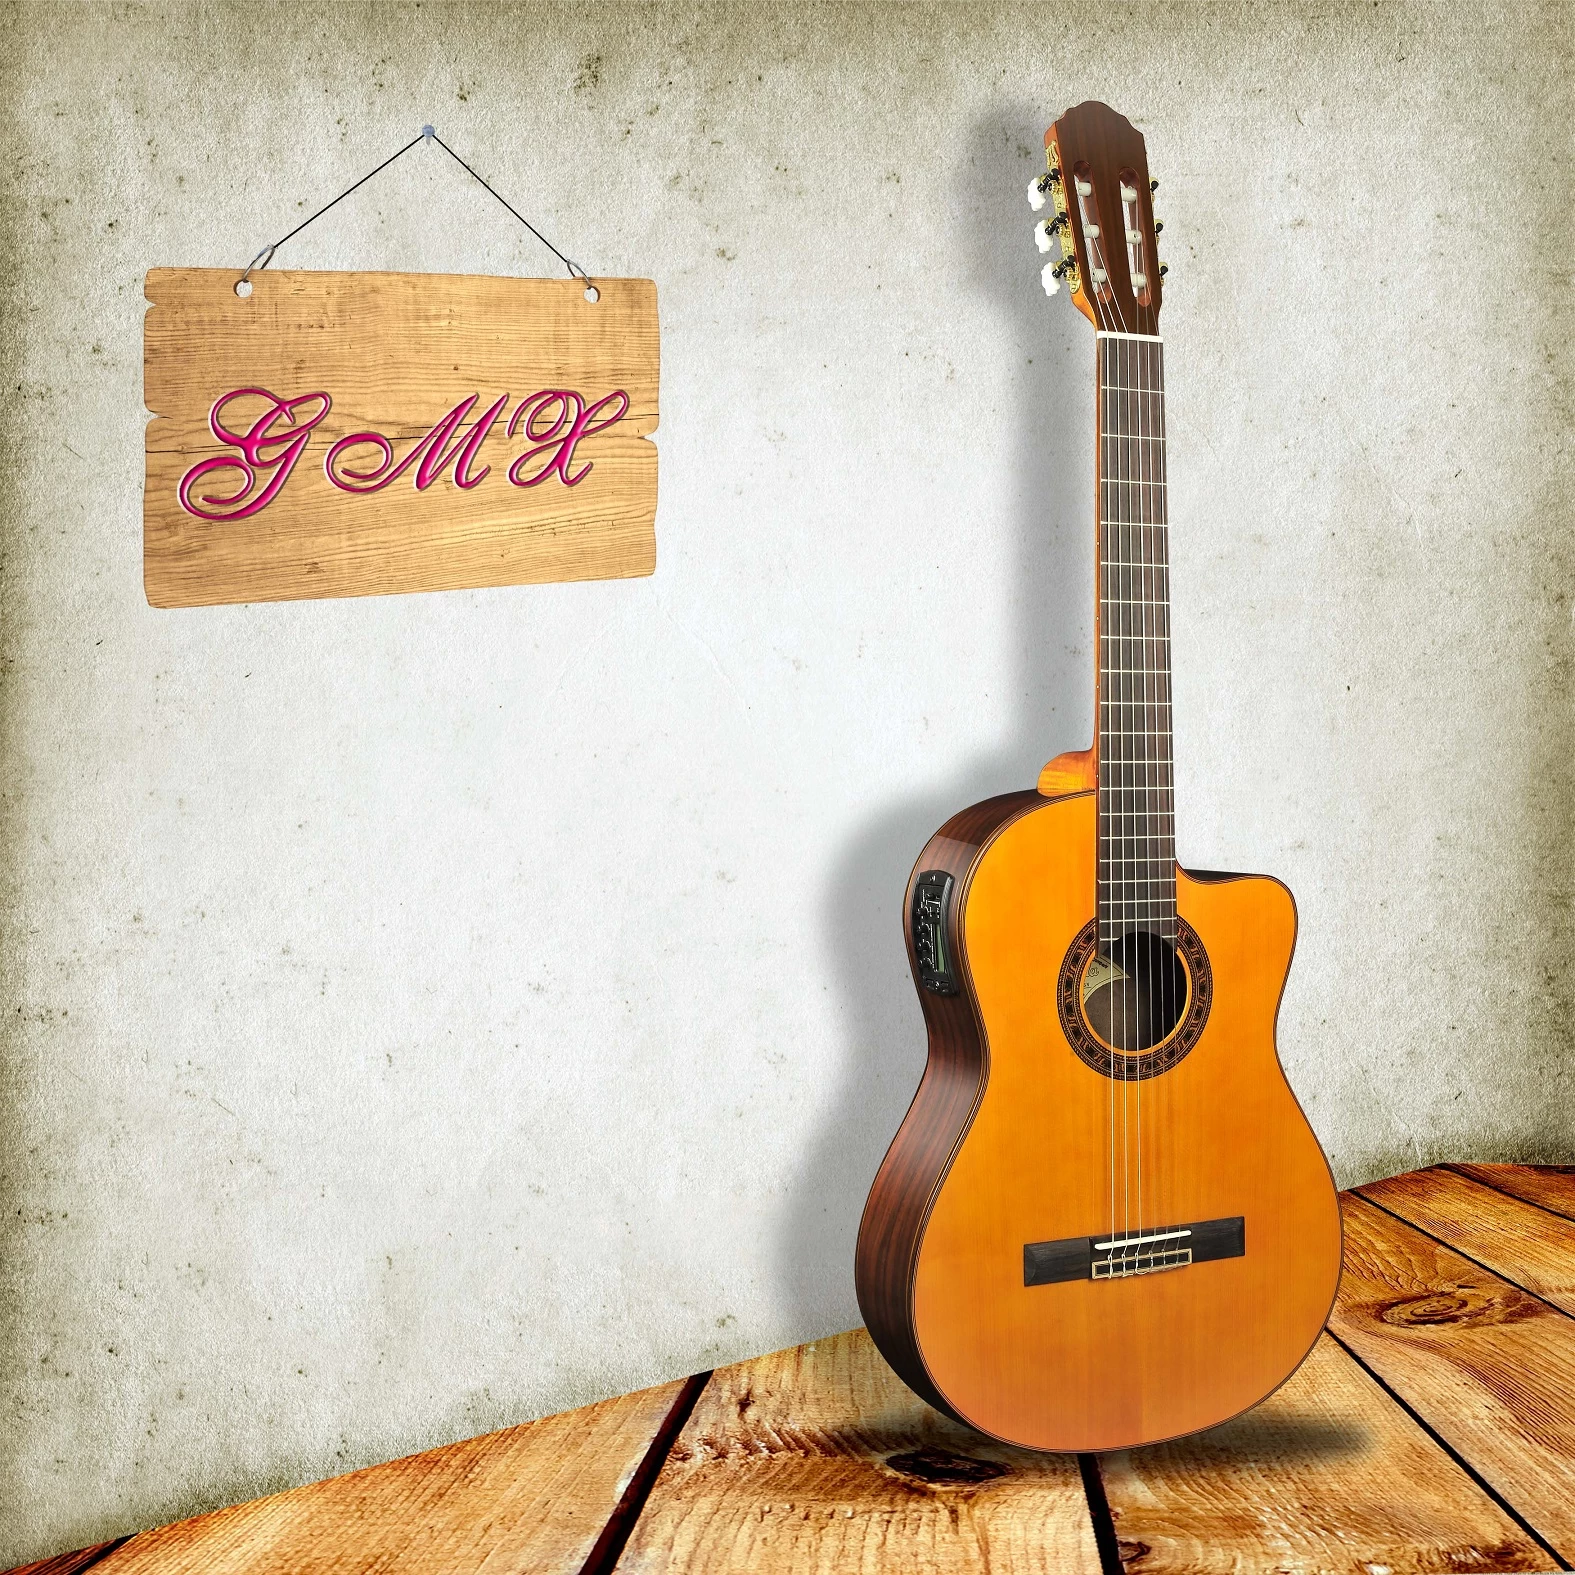 ソリッドスプルーストップとサイドクラシックギター/ソリッドウッド39インチクラシックギター